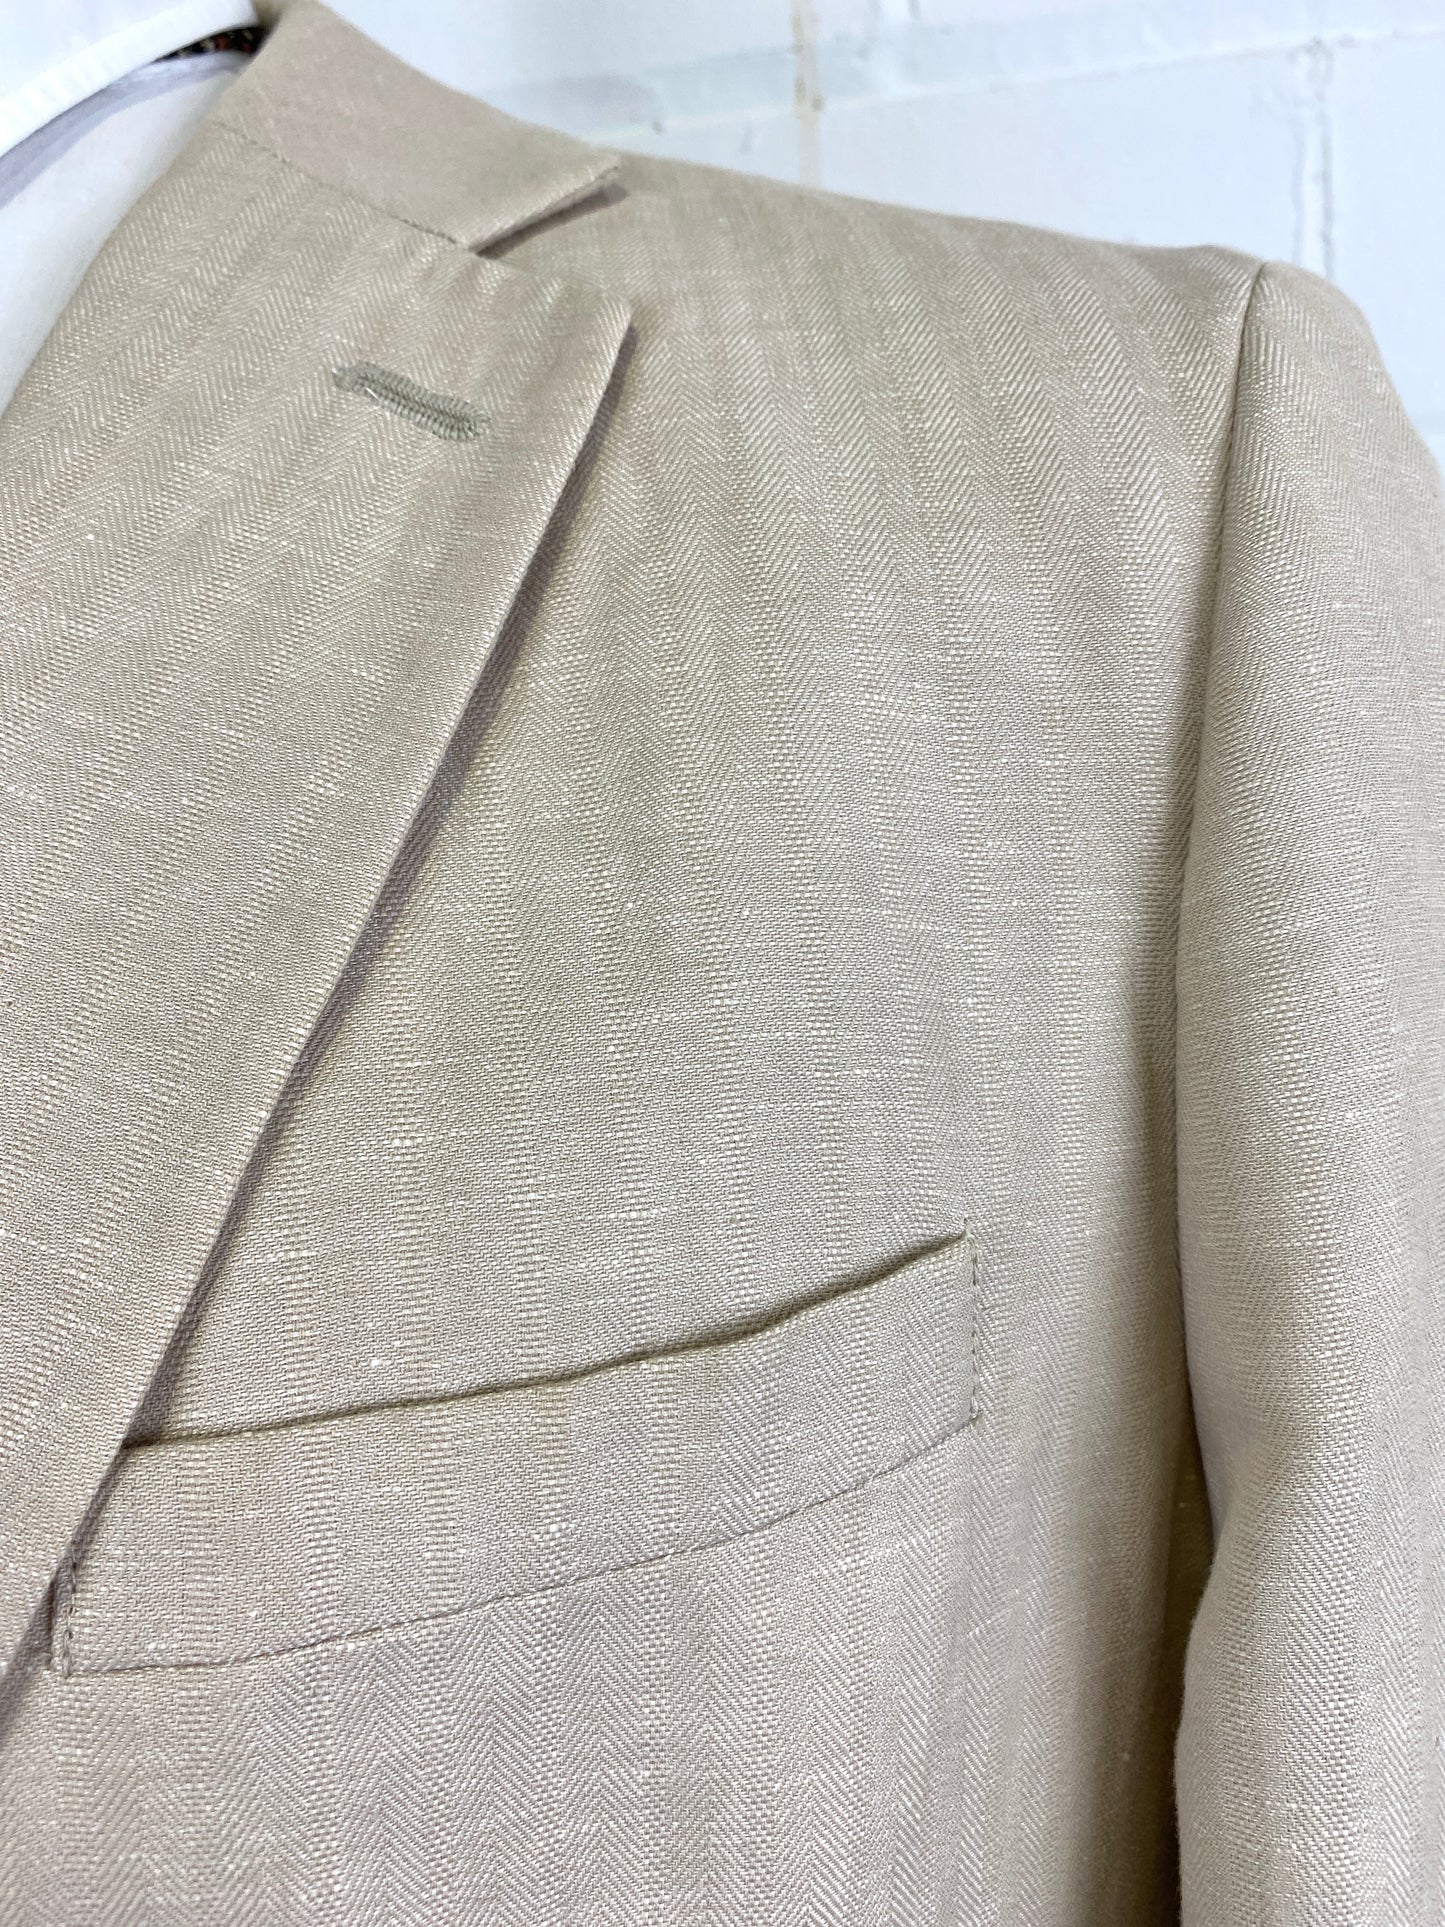 2000s Men's Beige Linen/ Cotton Herringbone Blazer, Axcess Jacket, C44T